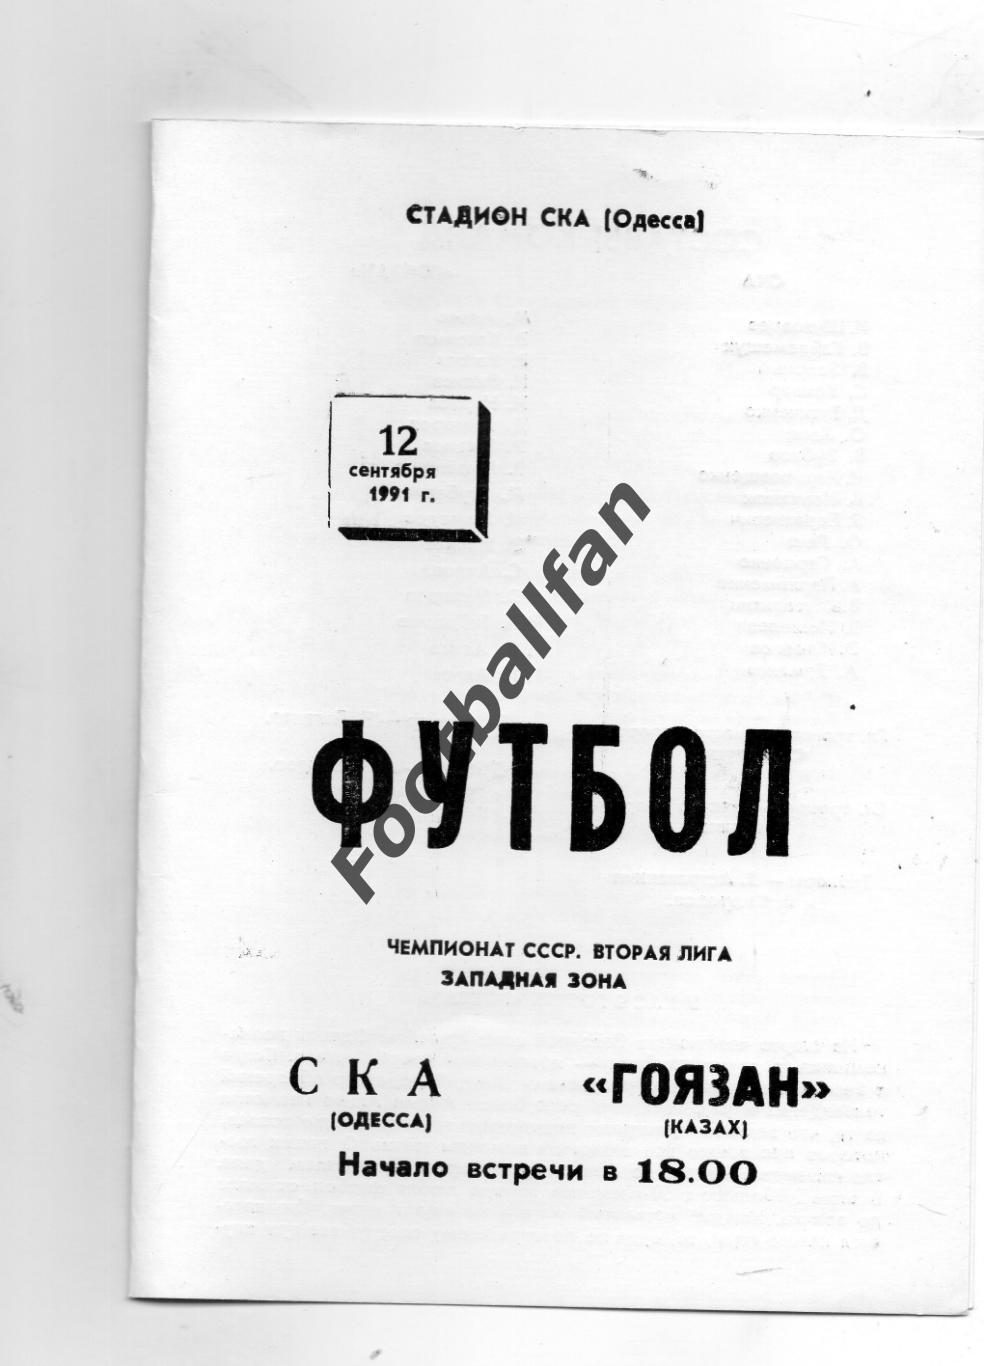 СКА Одесса - Гоязан Казах 12.09.1991